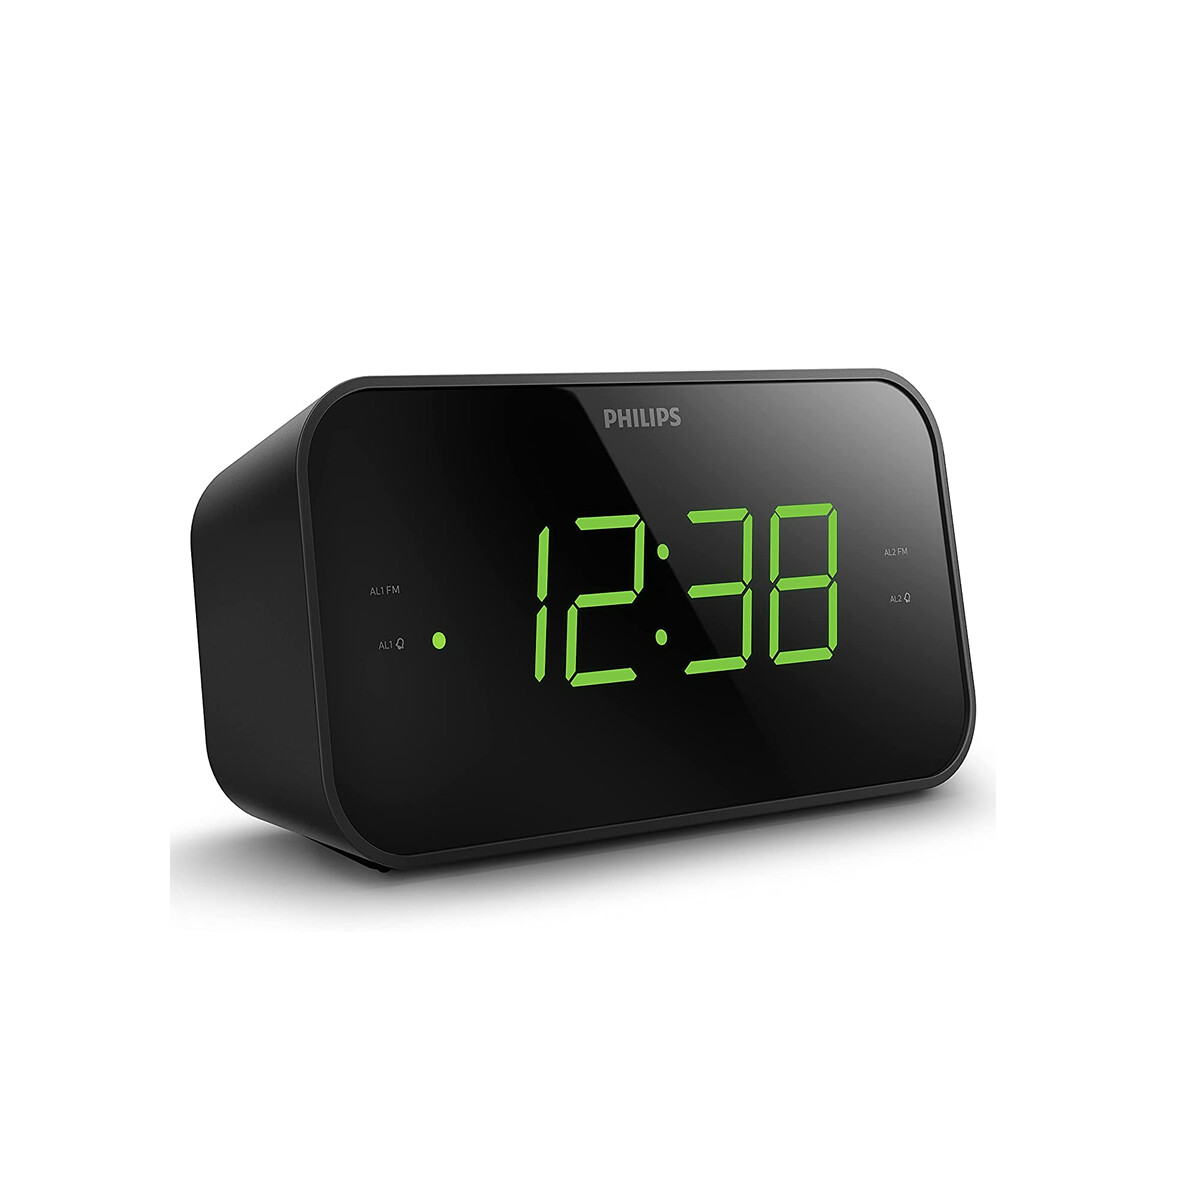 Radio Reloj Despertador Philips Doble Alarma 